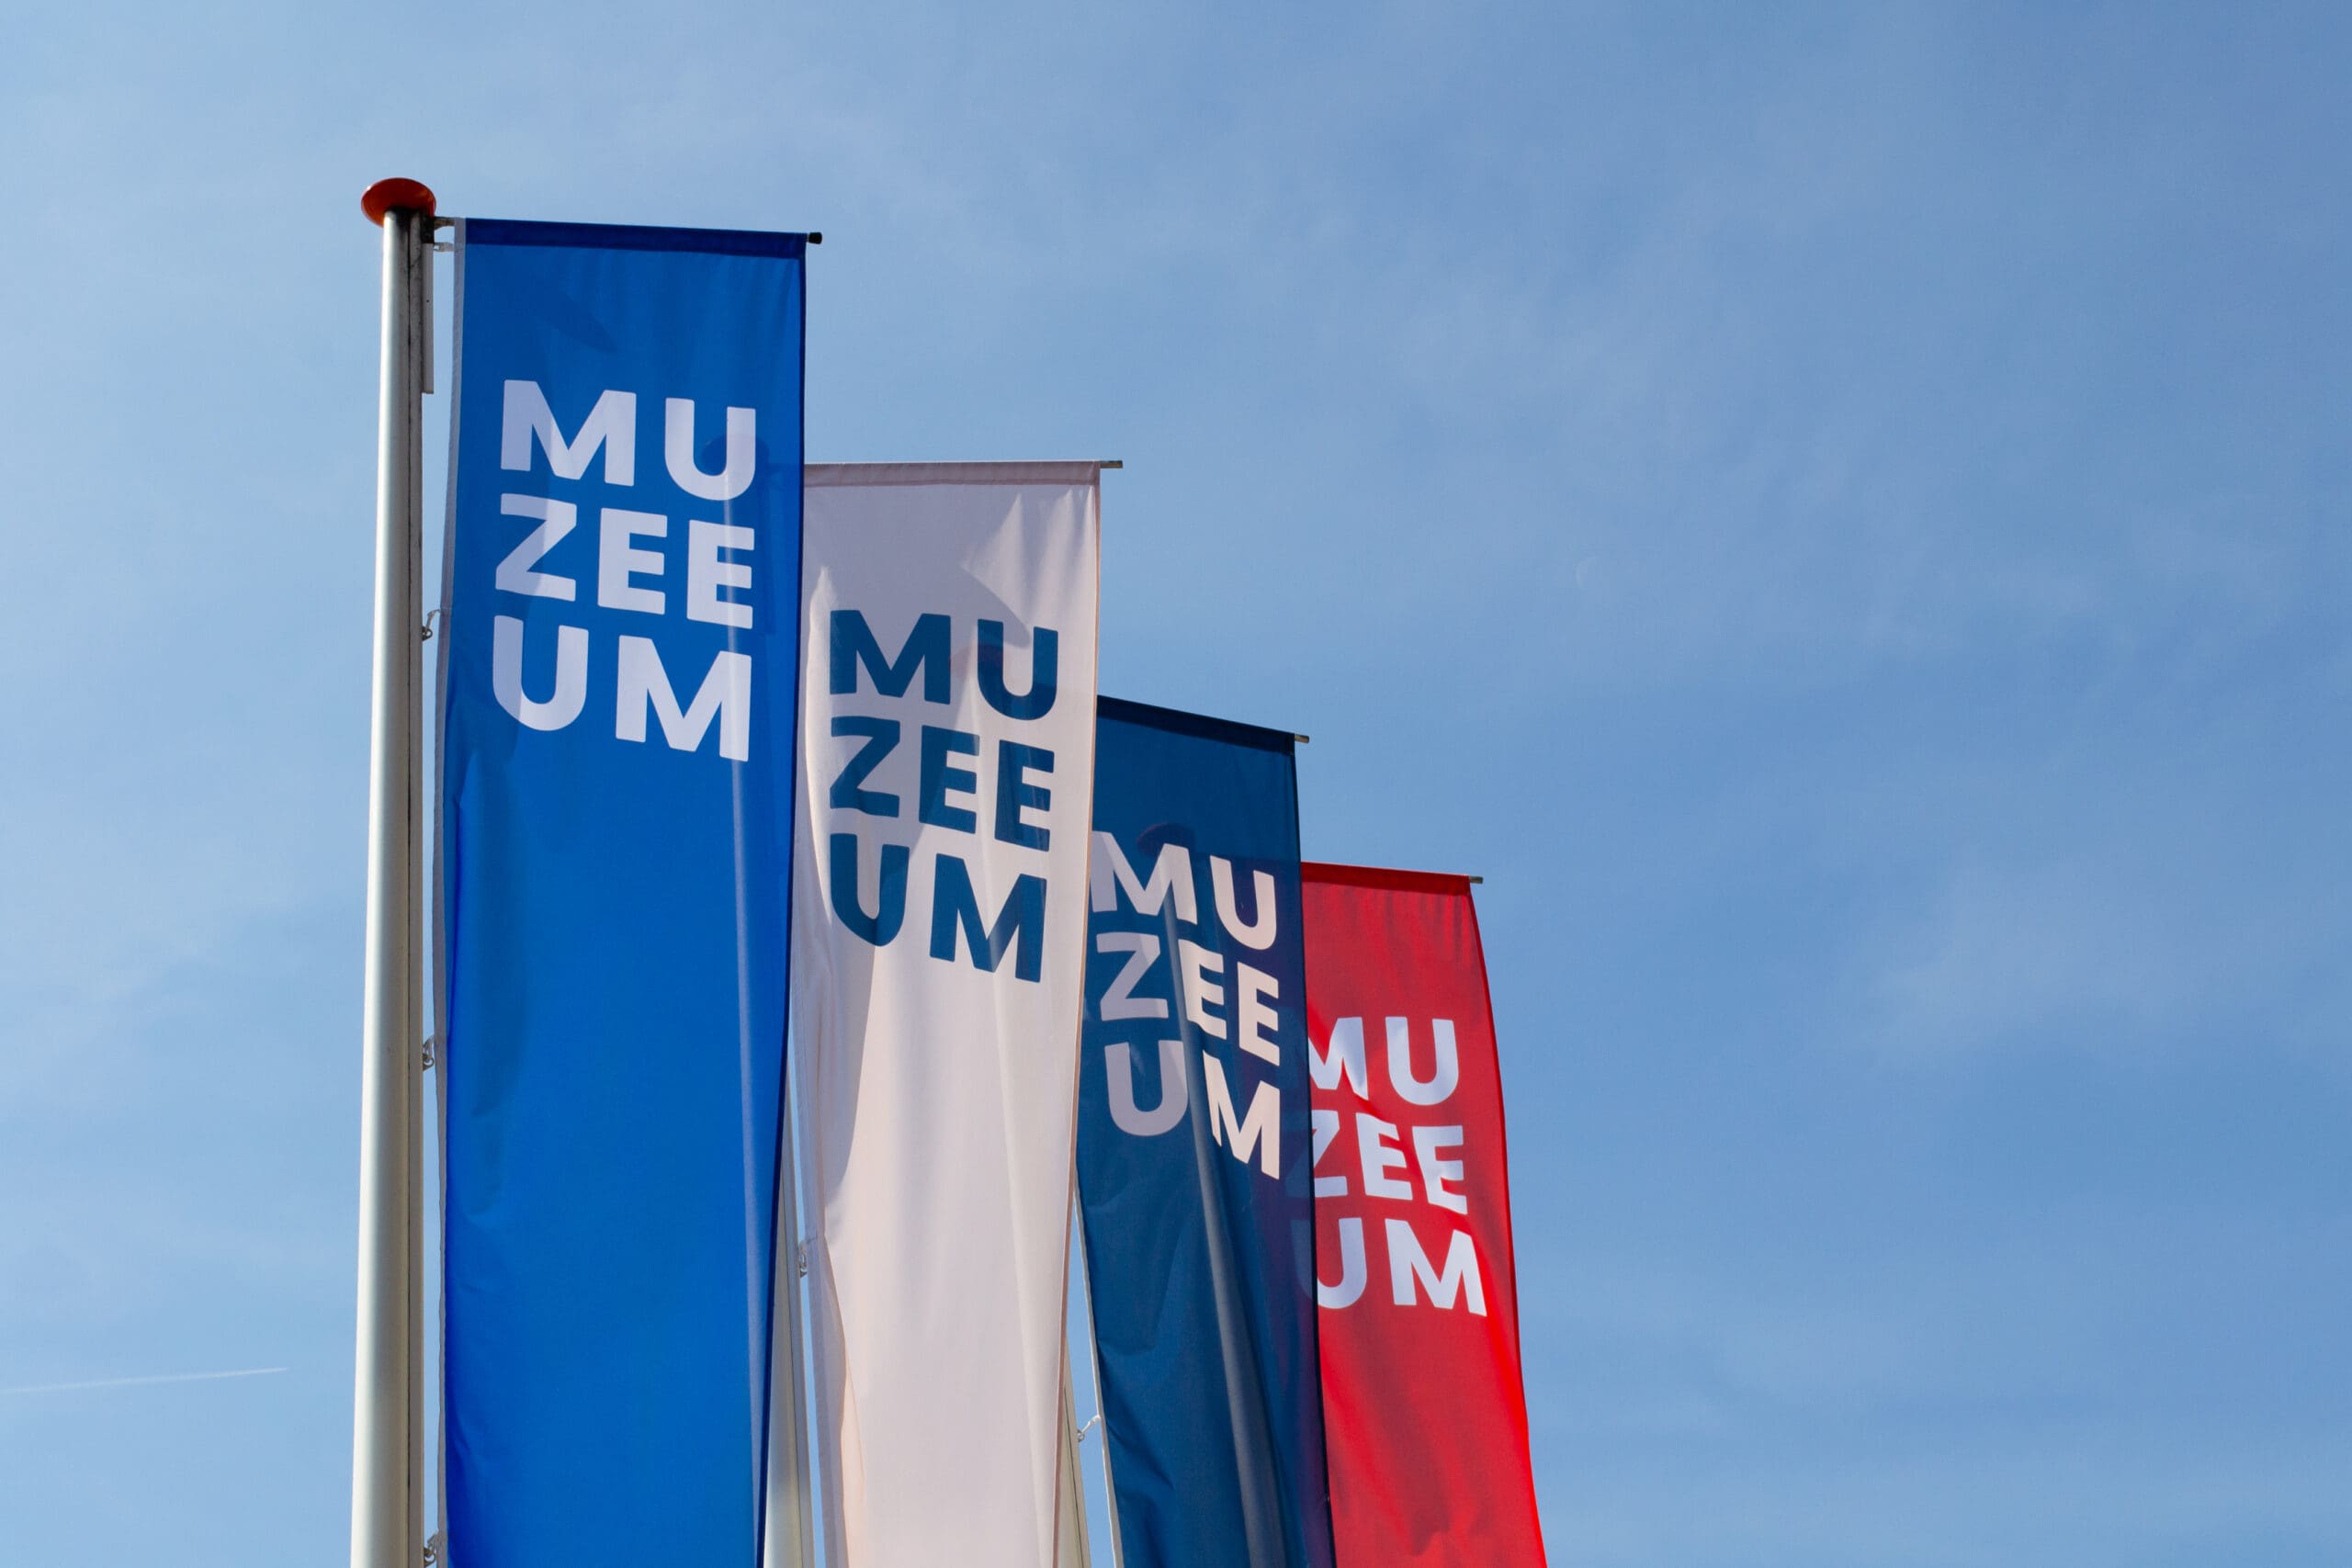 Baniervlaggen bij Muzeeum in vlissingen